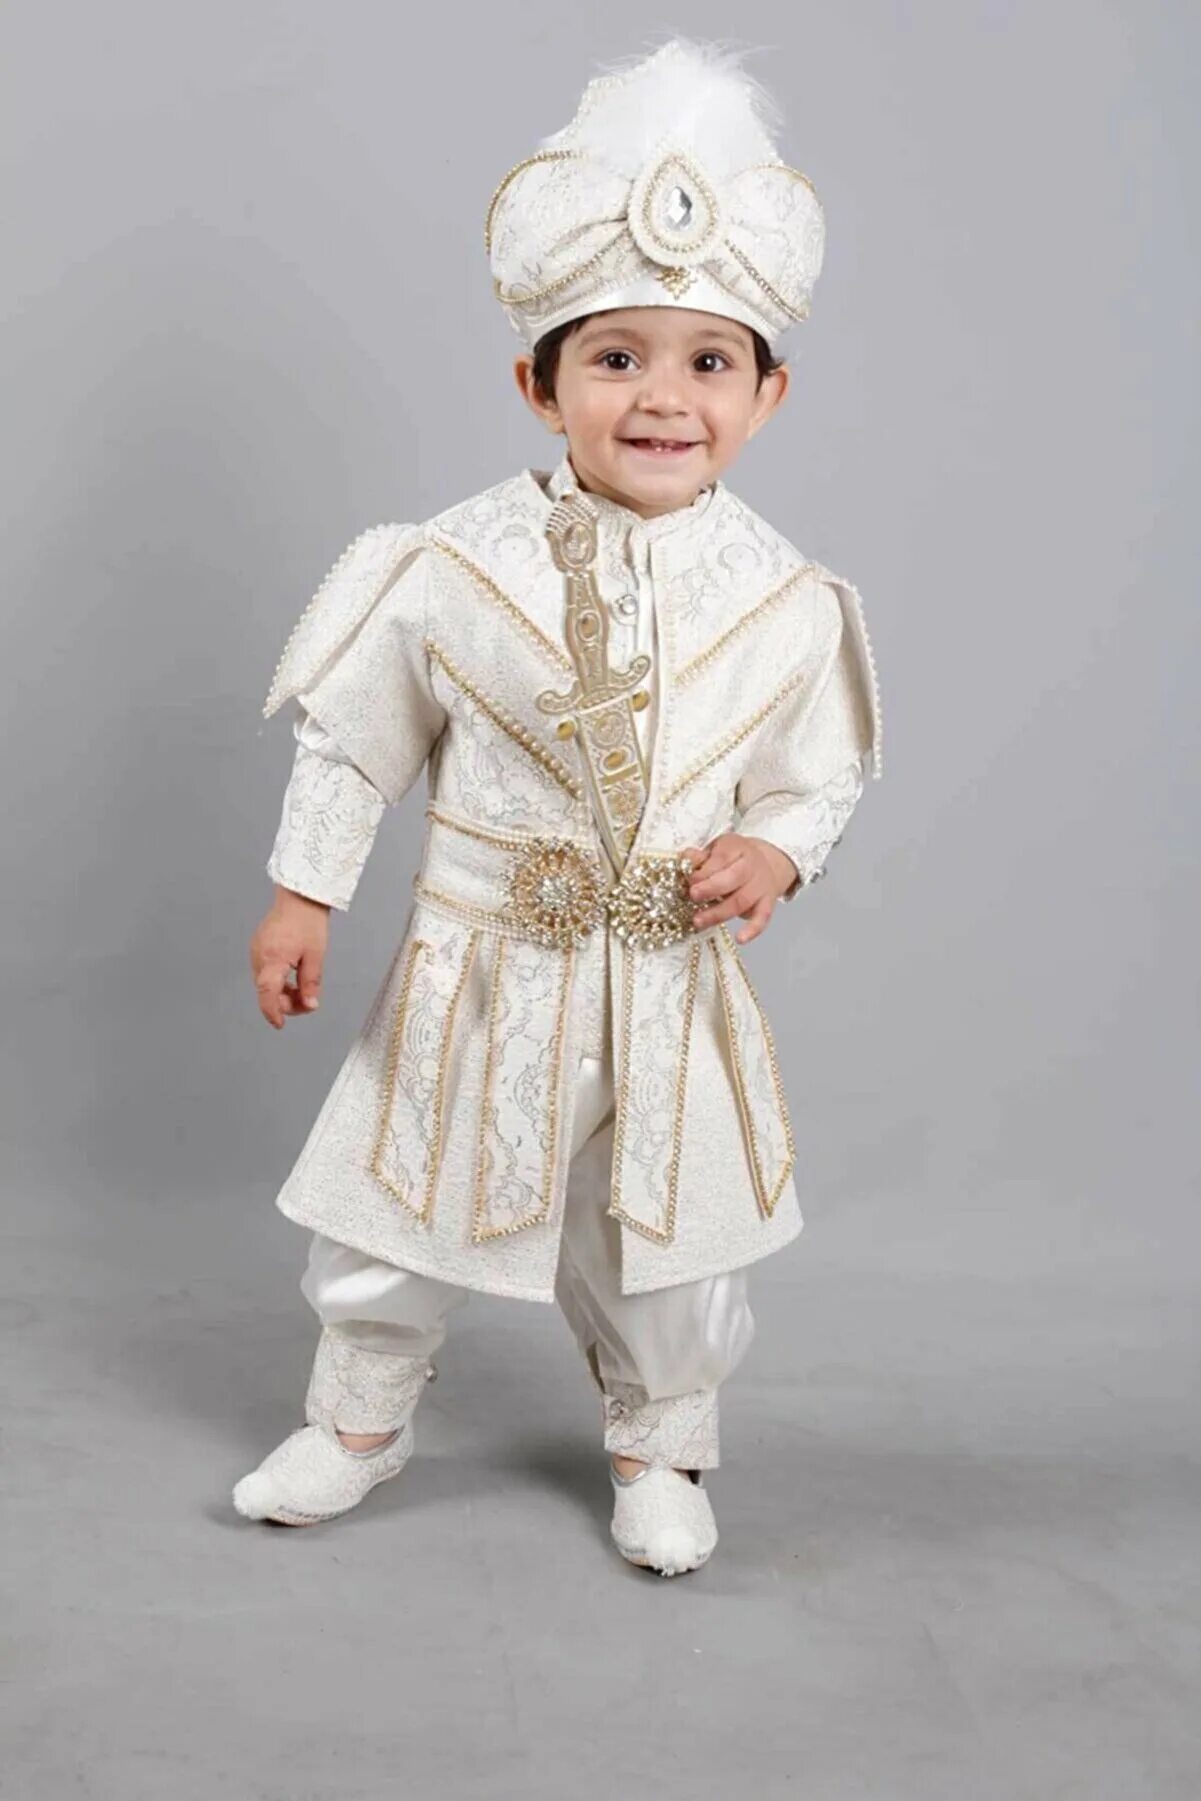 Казахский костюм для мальчика. Казахский национальный костюм детский. Белый костюм для мальчика. Казахская одежда для мальчиков. Казахские костюм детский